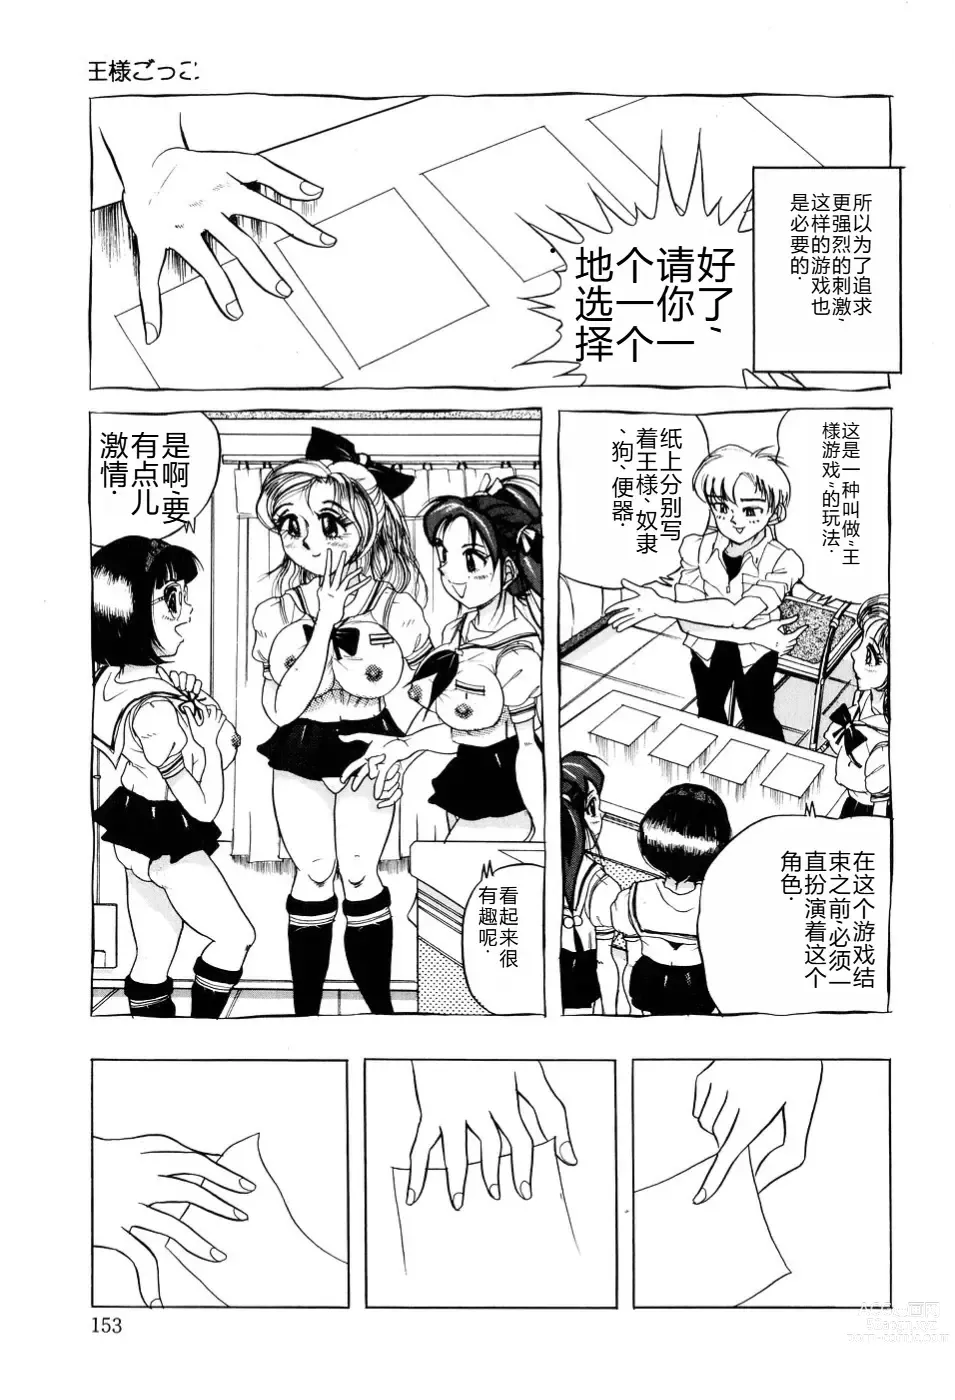 Page 154 of manga Kusozume Benkihime